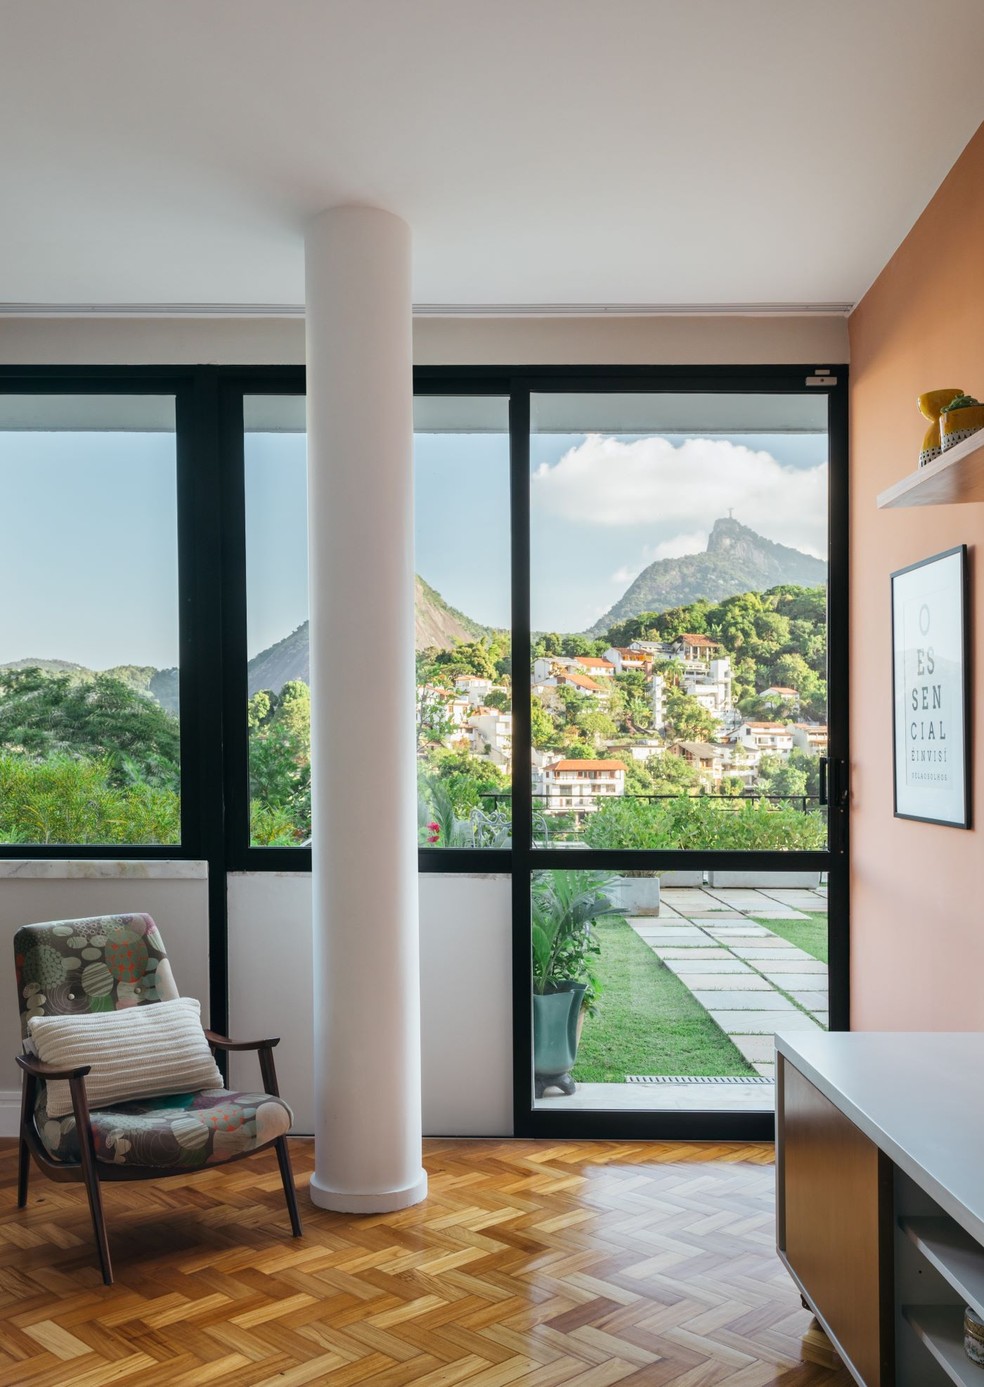 Emoldurando a paisagem: casas brasileiras com aberturas